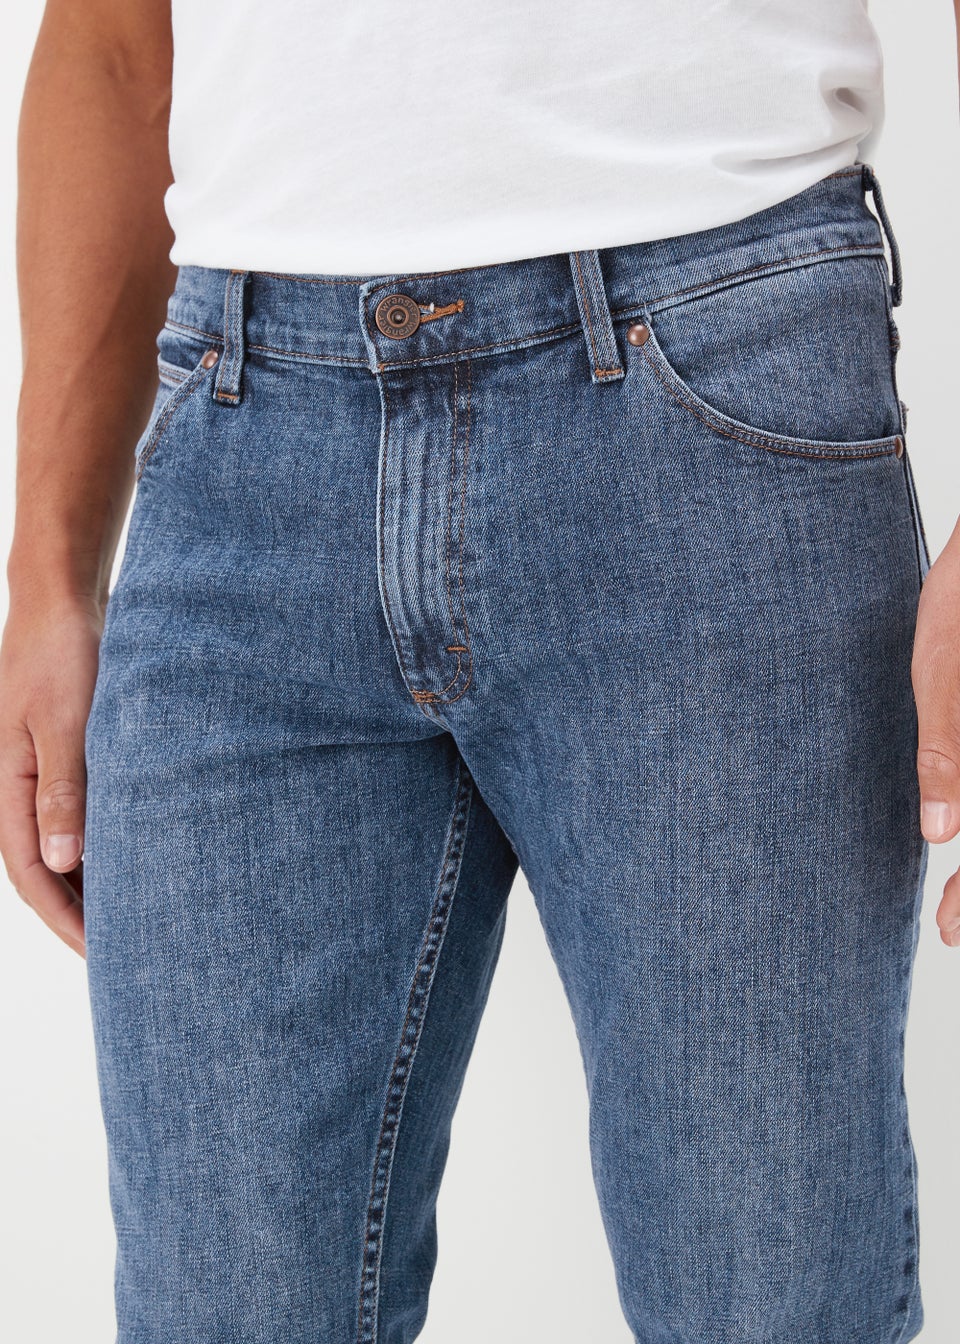 Wrangler Slim Fit Jeans